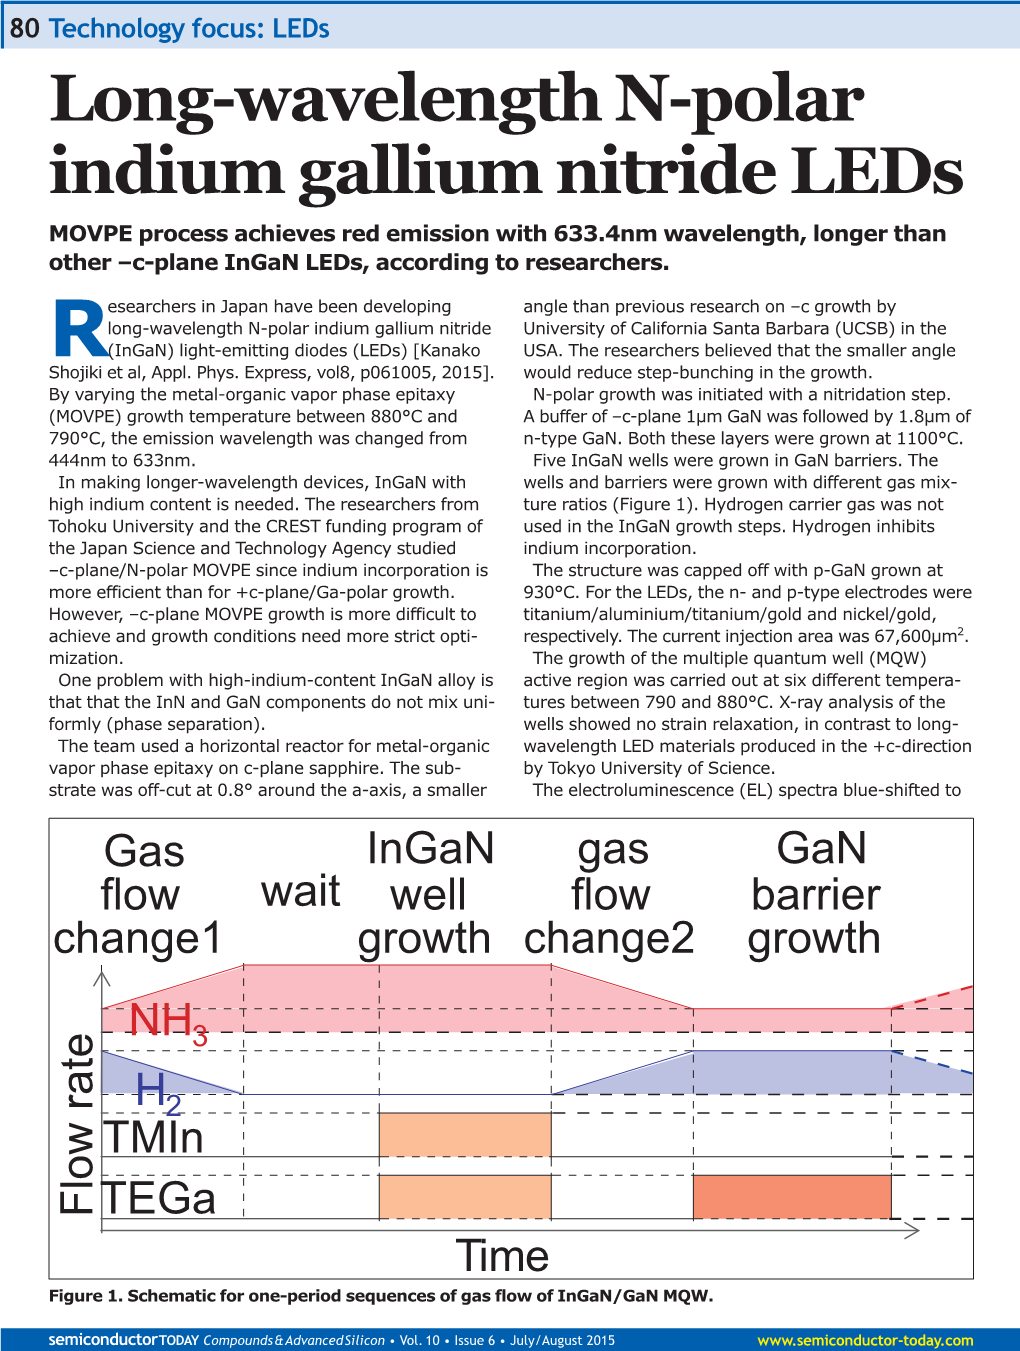 Long-Wavelength N-Polar Indium Gallium Nitride Leds